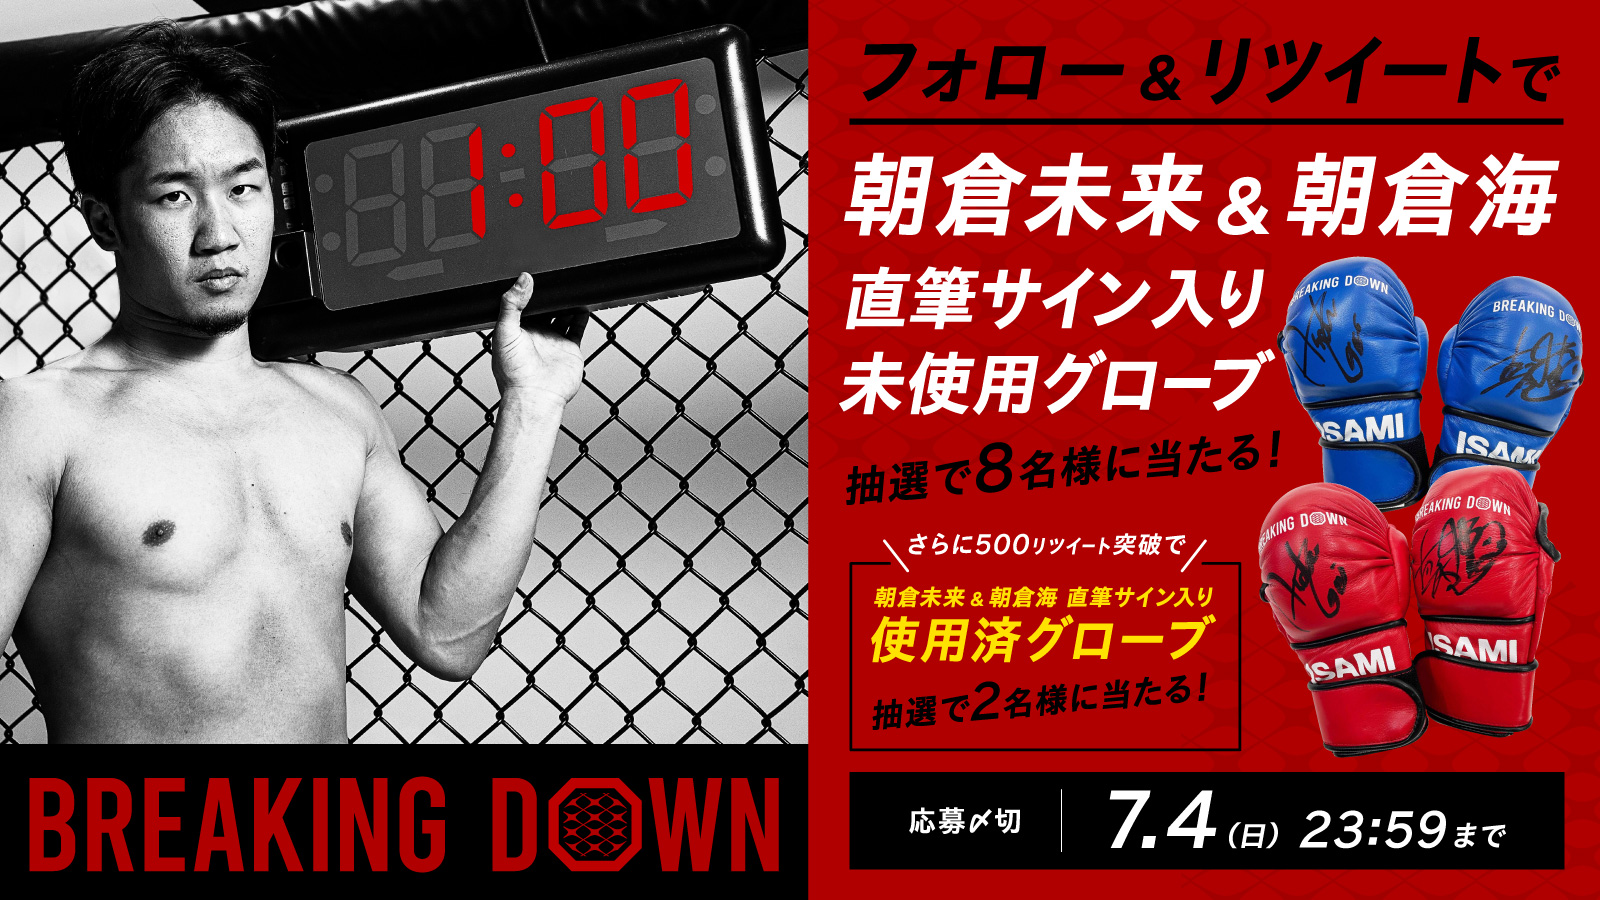 総合格闘技大会『BREAKING DOWN』第1回開催記念キャンペーン実施